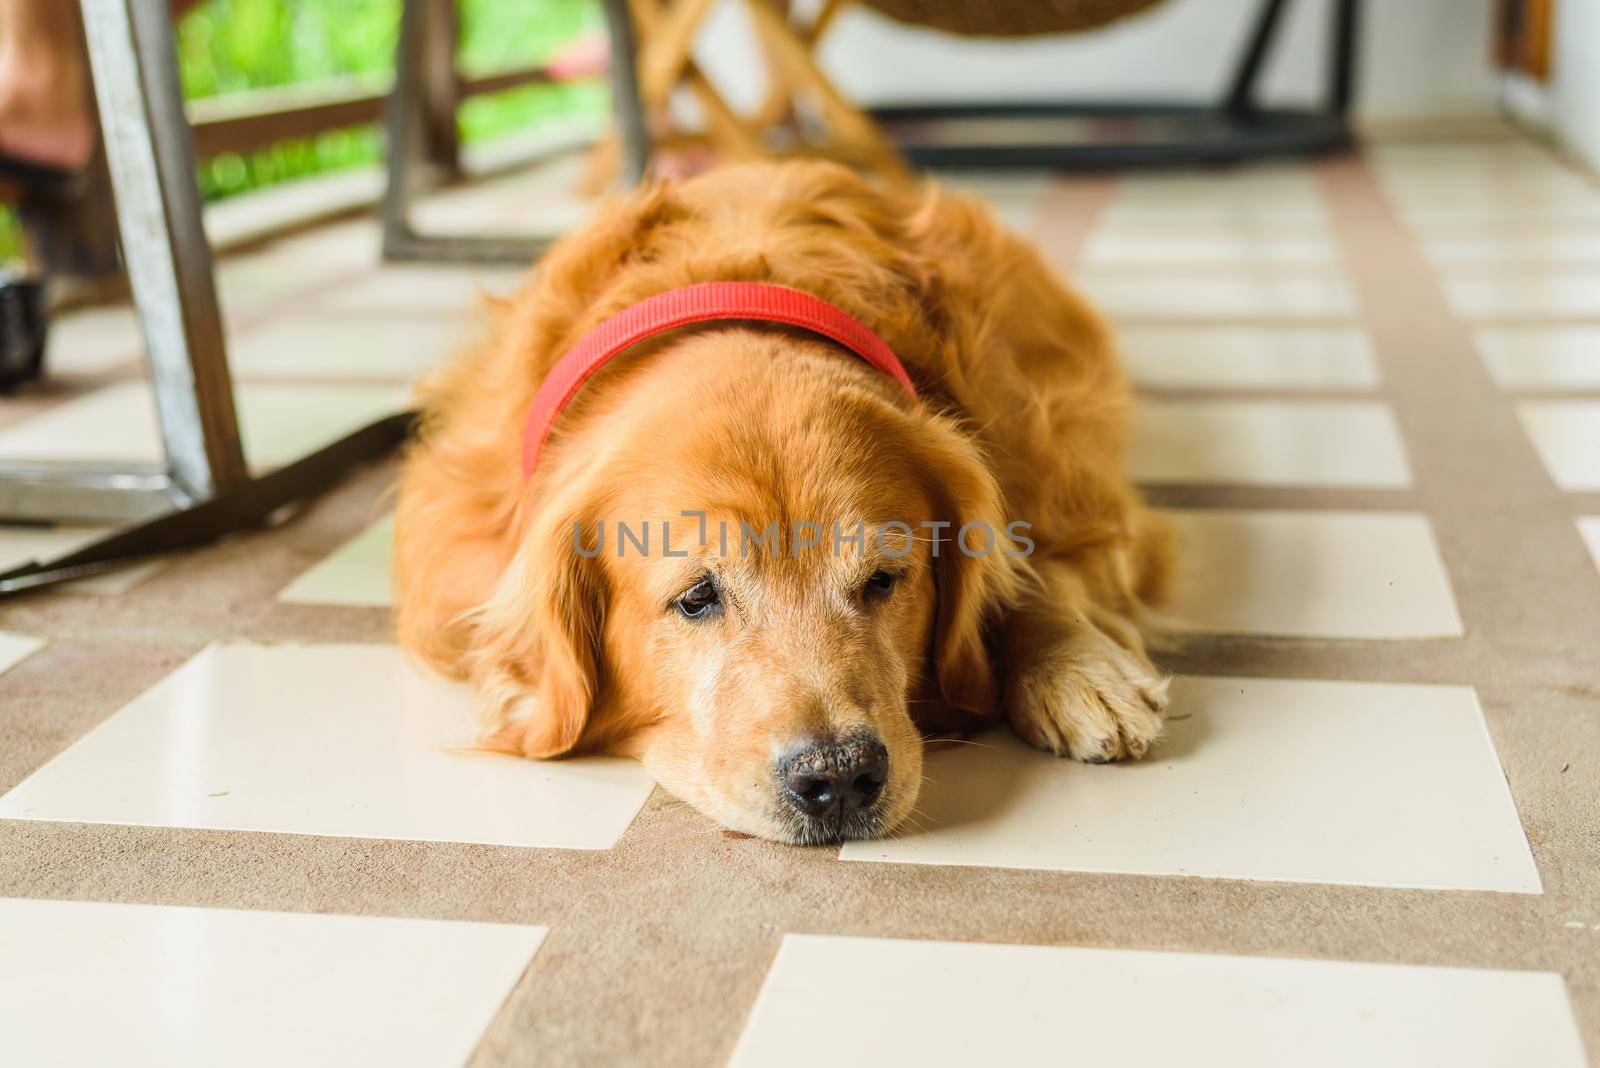 Dog golden retriever outdoor by Wmpix